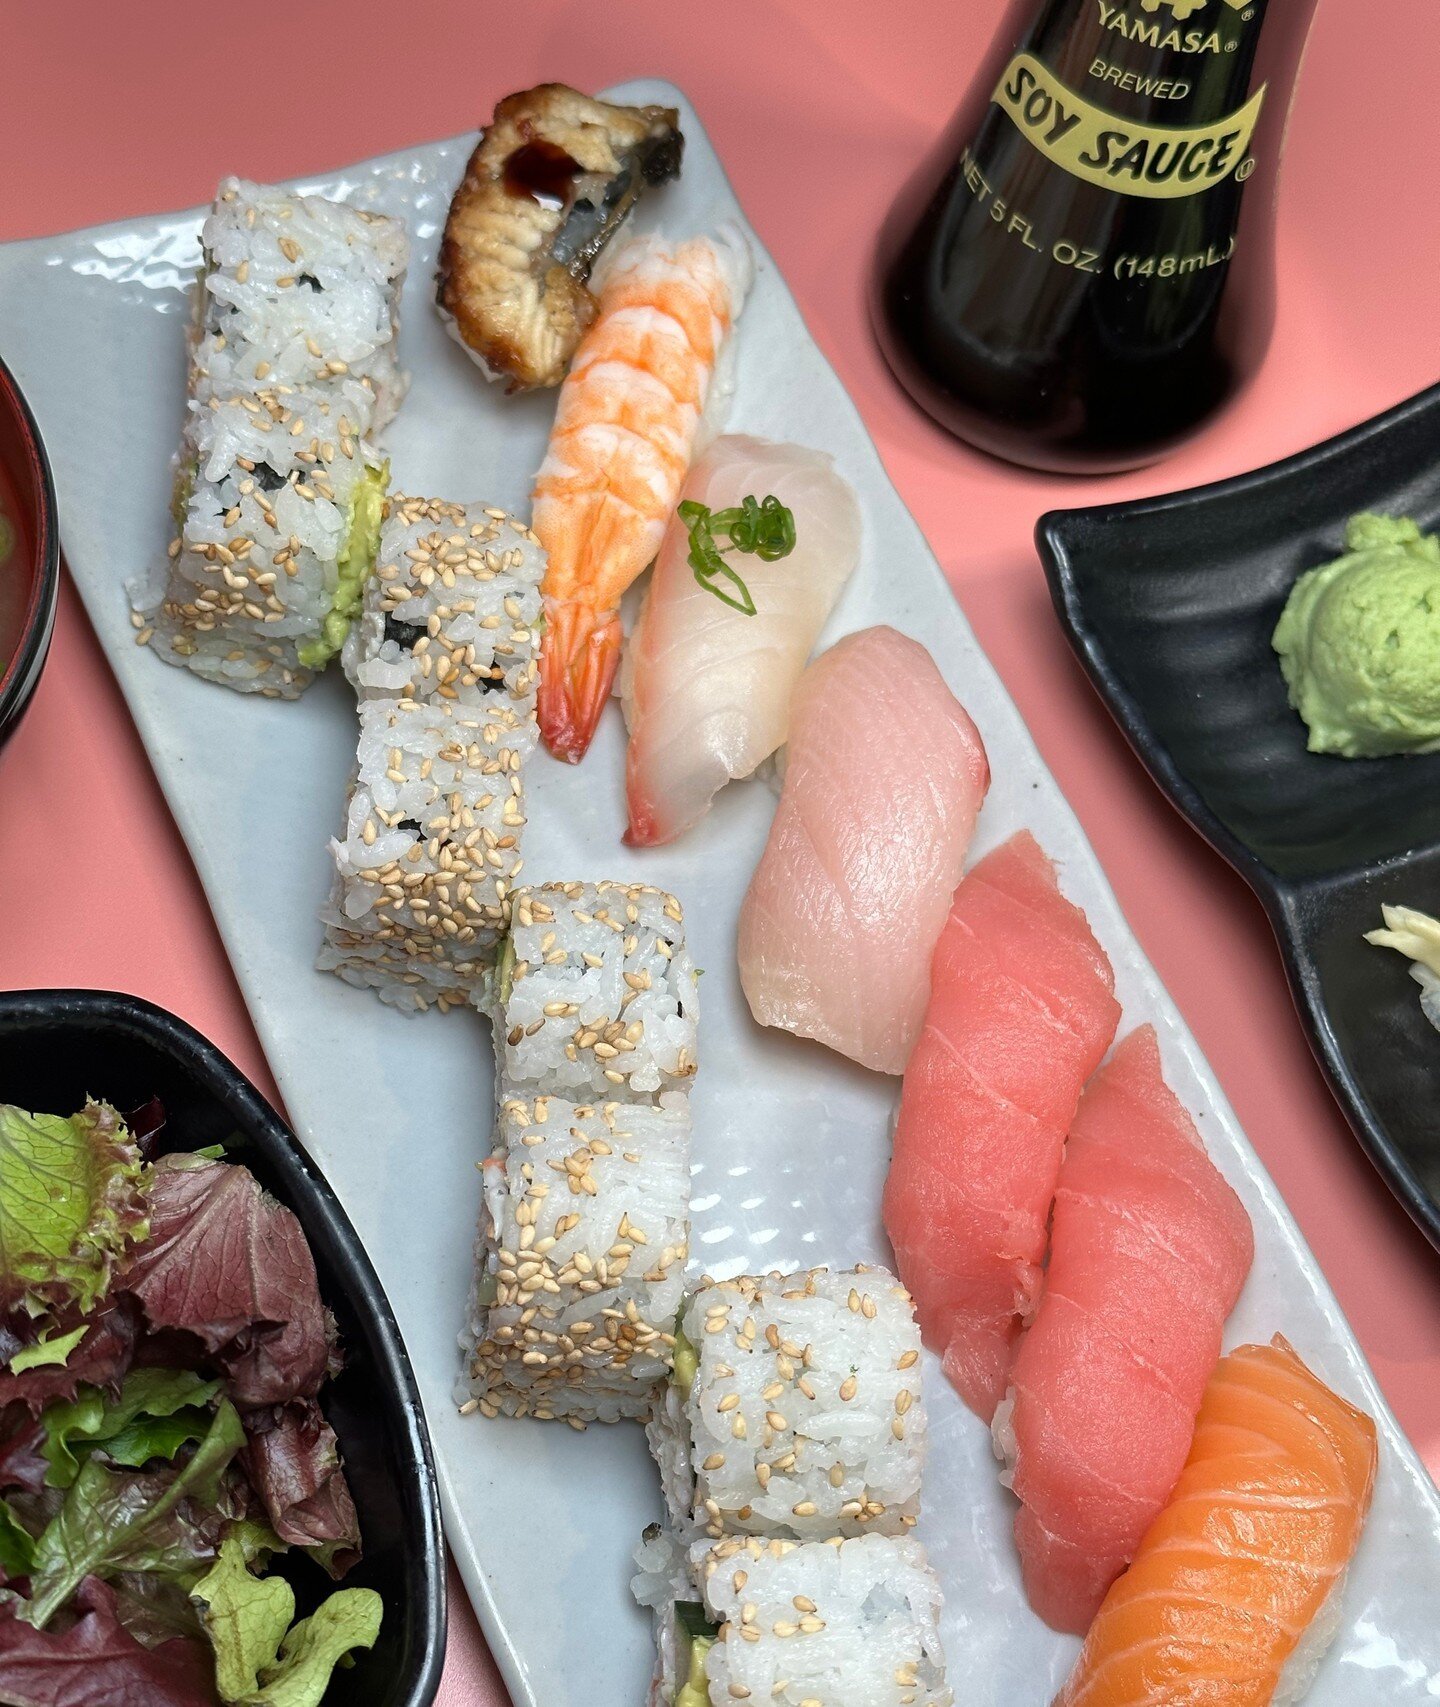 Sushi: because happiness is a bite away! Visit us today! #UmamiJourney 🍱🌈

◾️◽️◾️◽️◾️◽️◾️◽️◾️◽️ 
🍣 𝗔𝗬𝗖𝗘 𝗦𝗨𝗦𝗛𝗜 𝗛𝗢𝗨𝗦𝗘 𝗚𝗢𝗬𝗘𝗠𝗢𝗡 
⏰ ᴅᴀɪʟʏ: 12:00 ᴘᴍ - 11:00 ᴘᴍ 
⏰ ʟᴀꜱᴛ ꜱᴇᴀᴛɪɴɢ ꜰᴏʀ ᴀʏᴄᴇ 10ᴘᴍ 
⏰ ʟᴀꜱᴛ ᴏʀᴅᴇʀ 10:30ᴘᴍ 
📍 5255 ꜱ ᴅᴇᴄᴀᴛᴜʀ ʙ